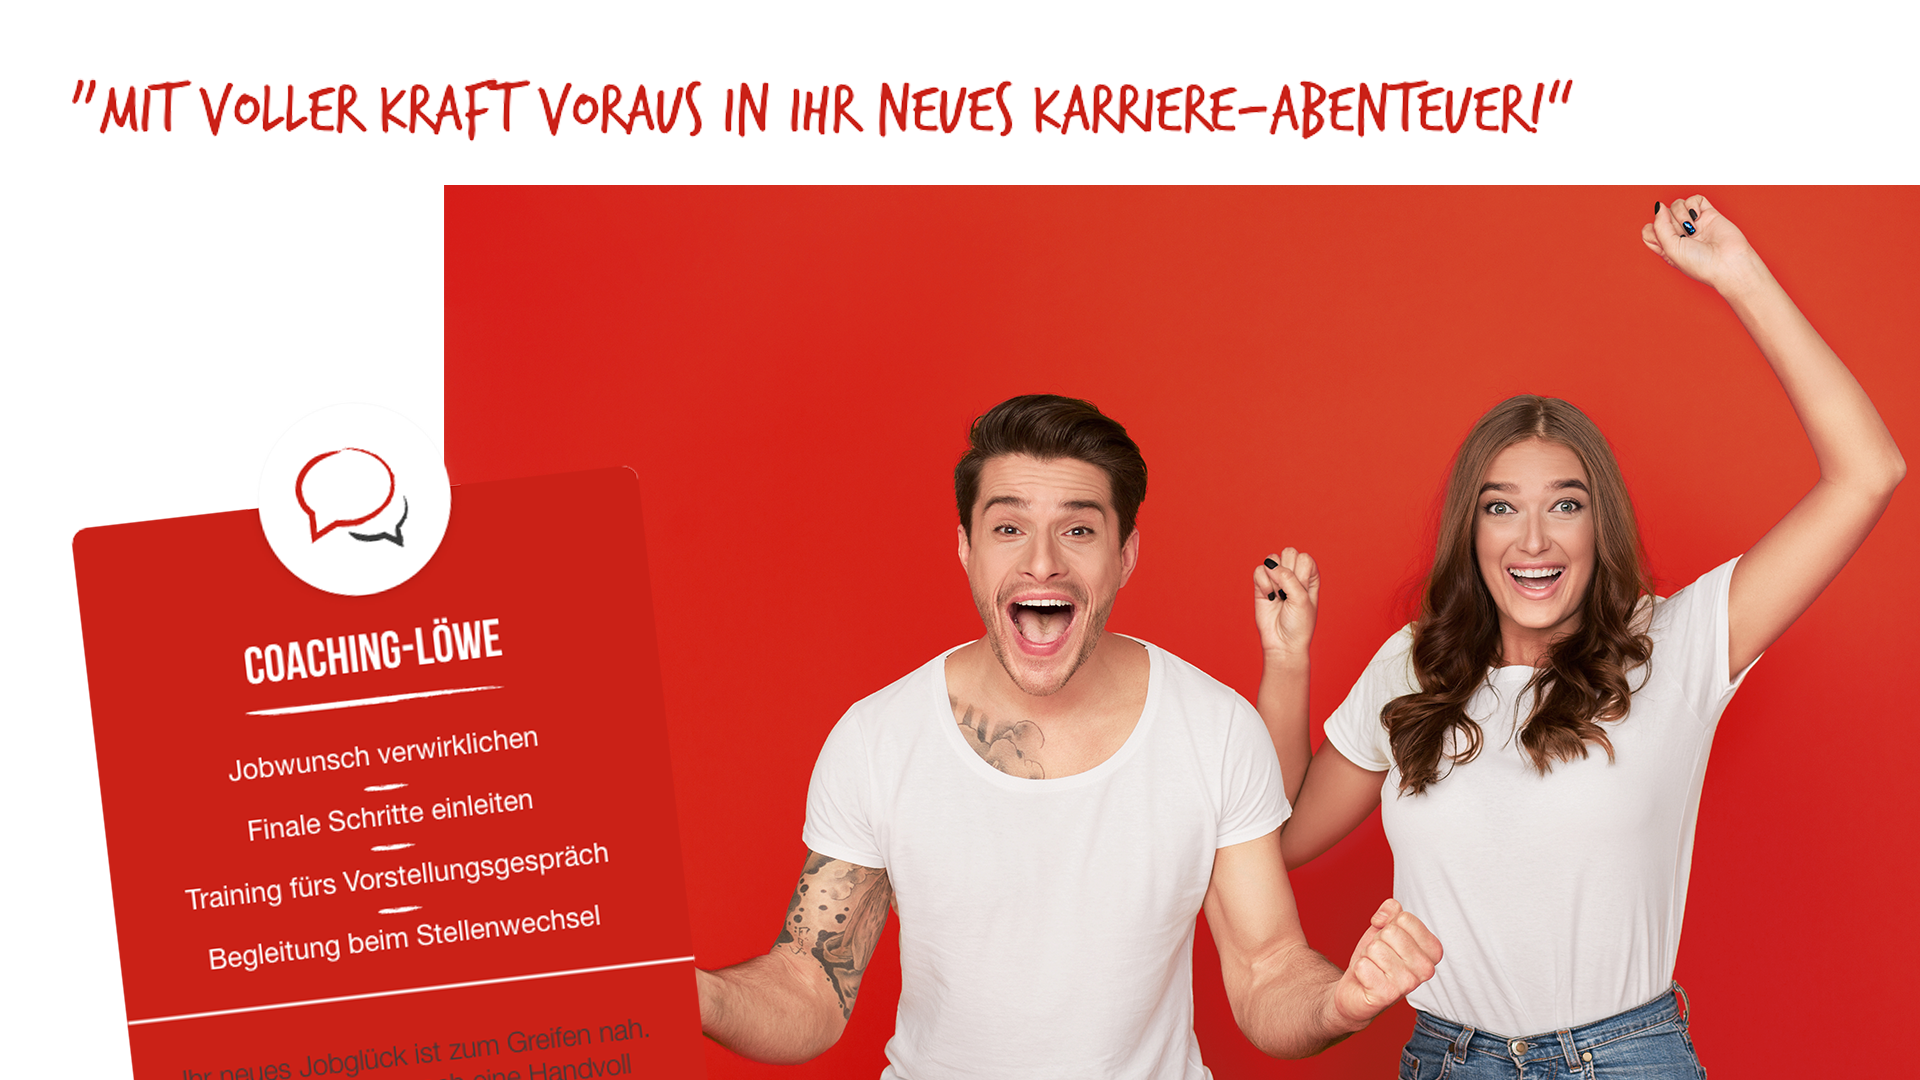 Scribble Werbeagentur nah bei Düsseldorf zeigt ein Paar, das mit voller Kraft In ein neues Karriere-Abenteuer startet.